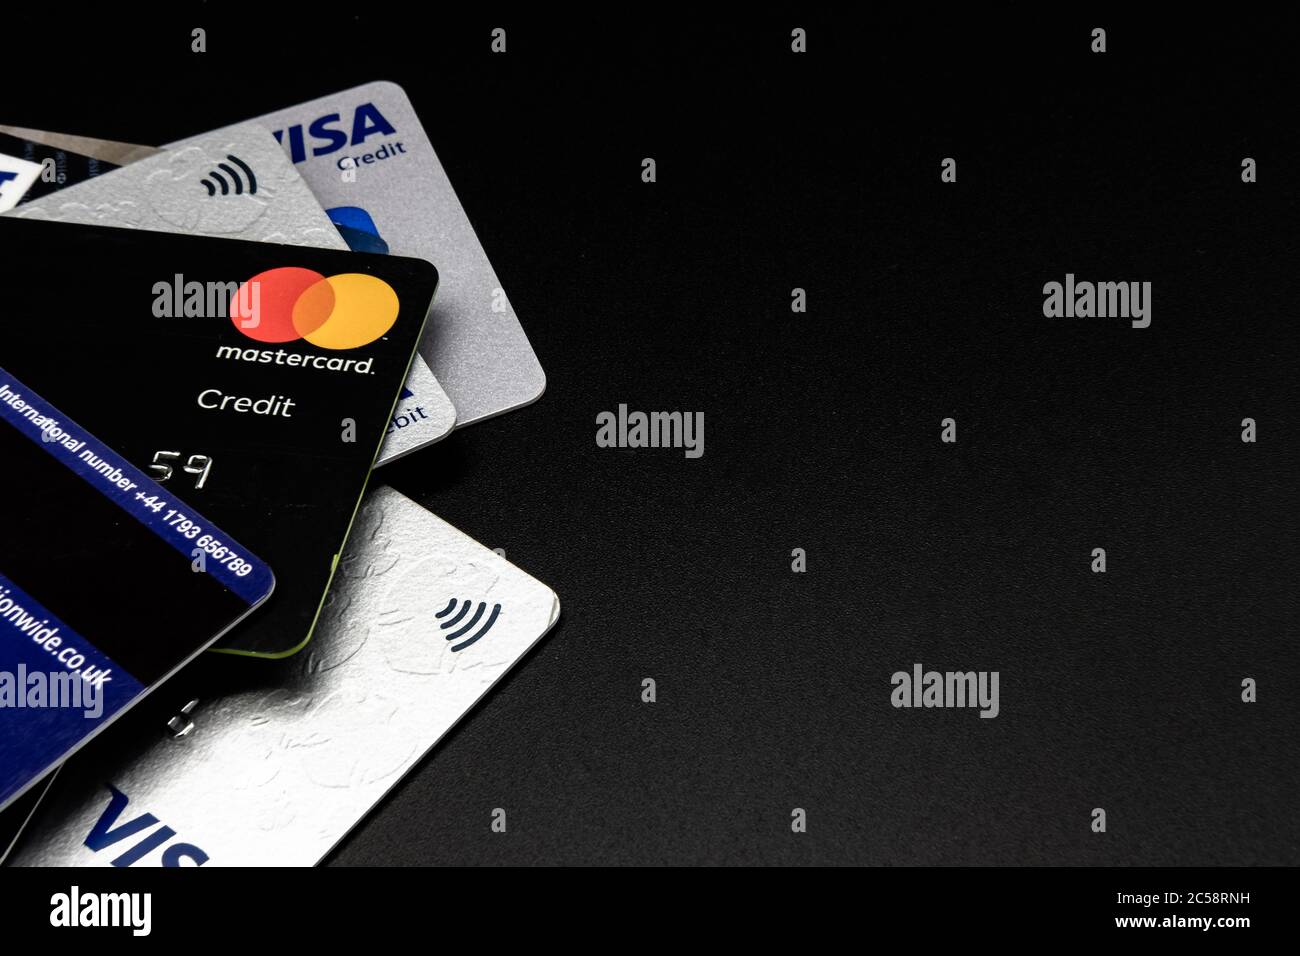 Pila di carte di credito e di debito di ben note società finanziarie. Visualizzazione dei dettagli dei disegni insieme ai simboli di pagamento senza contatto. Foto Stock